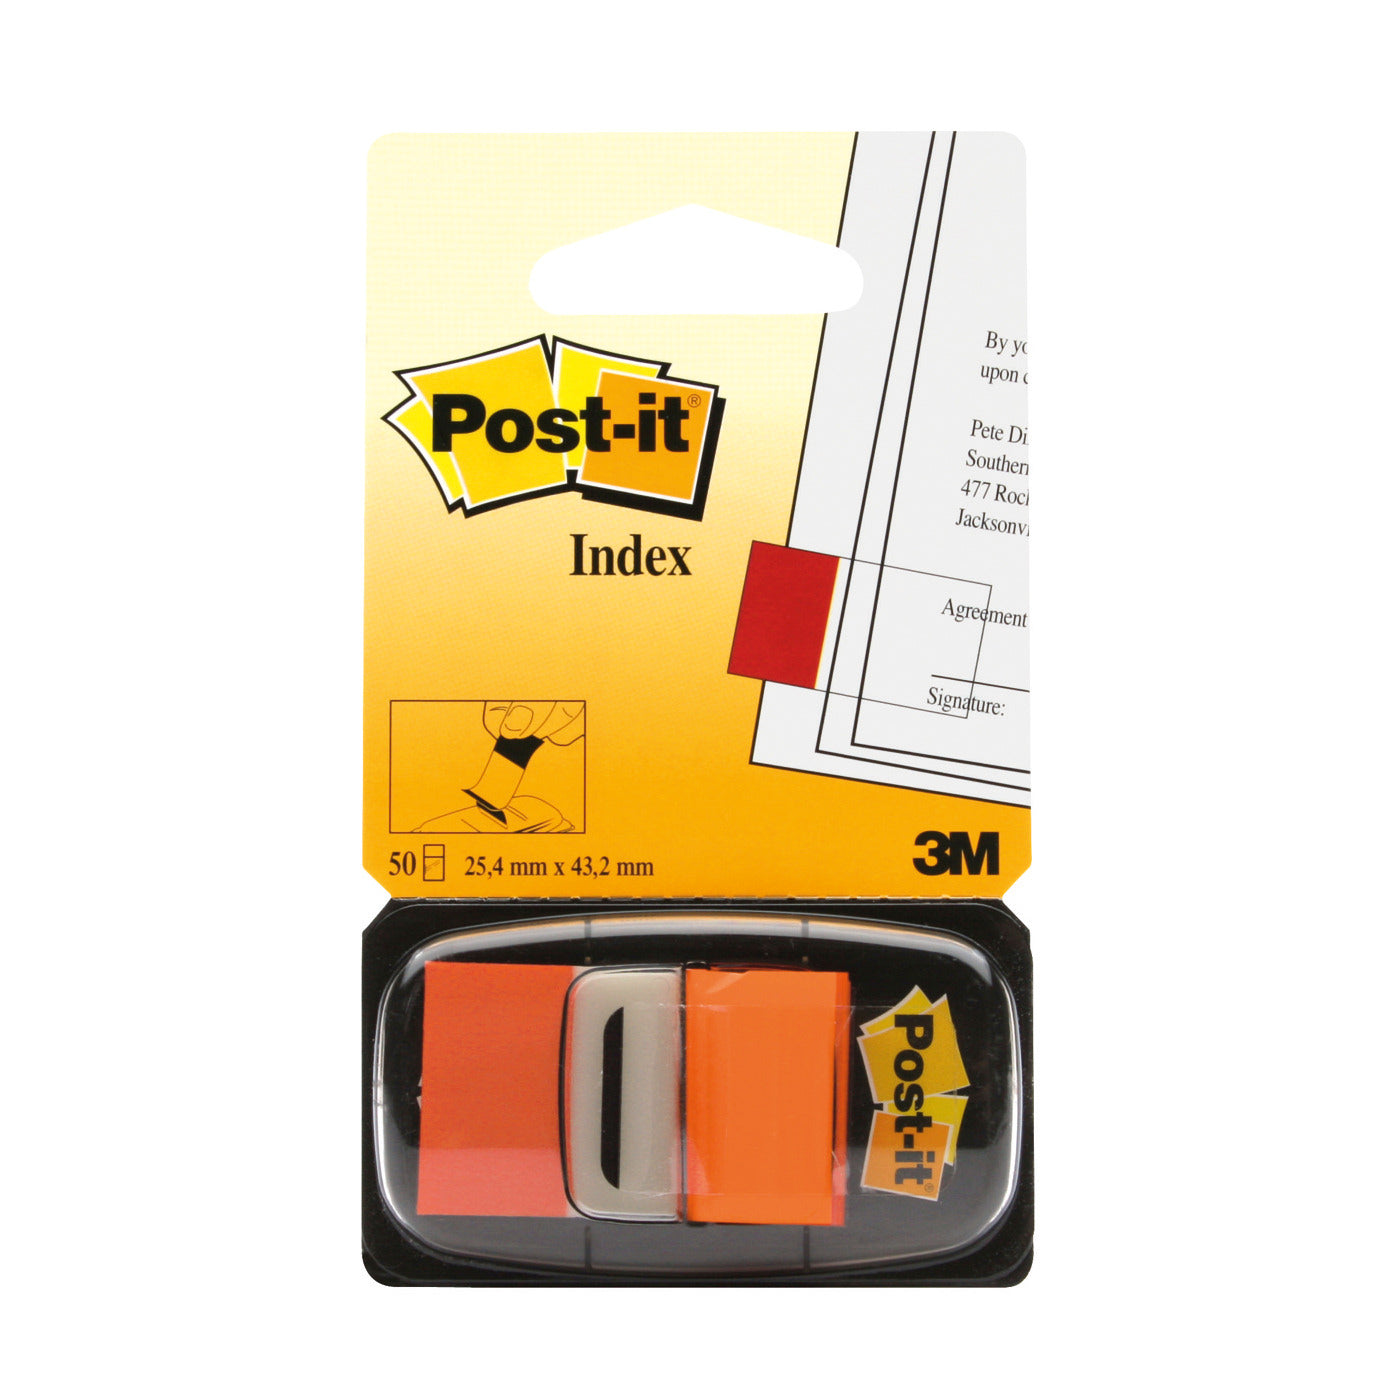 3m Postit Index Tape Flag Orange 25mm Pack Of 12